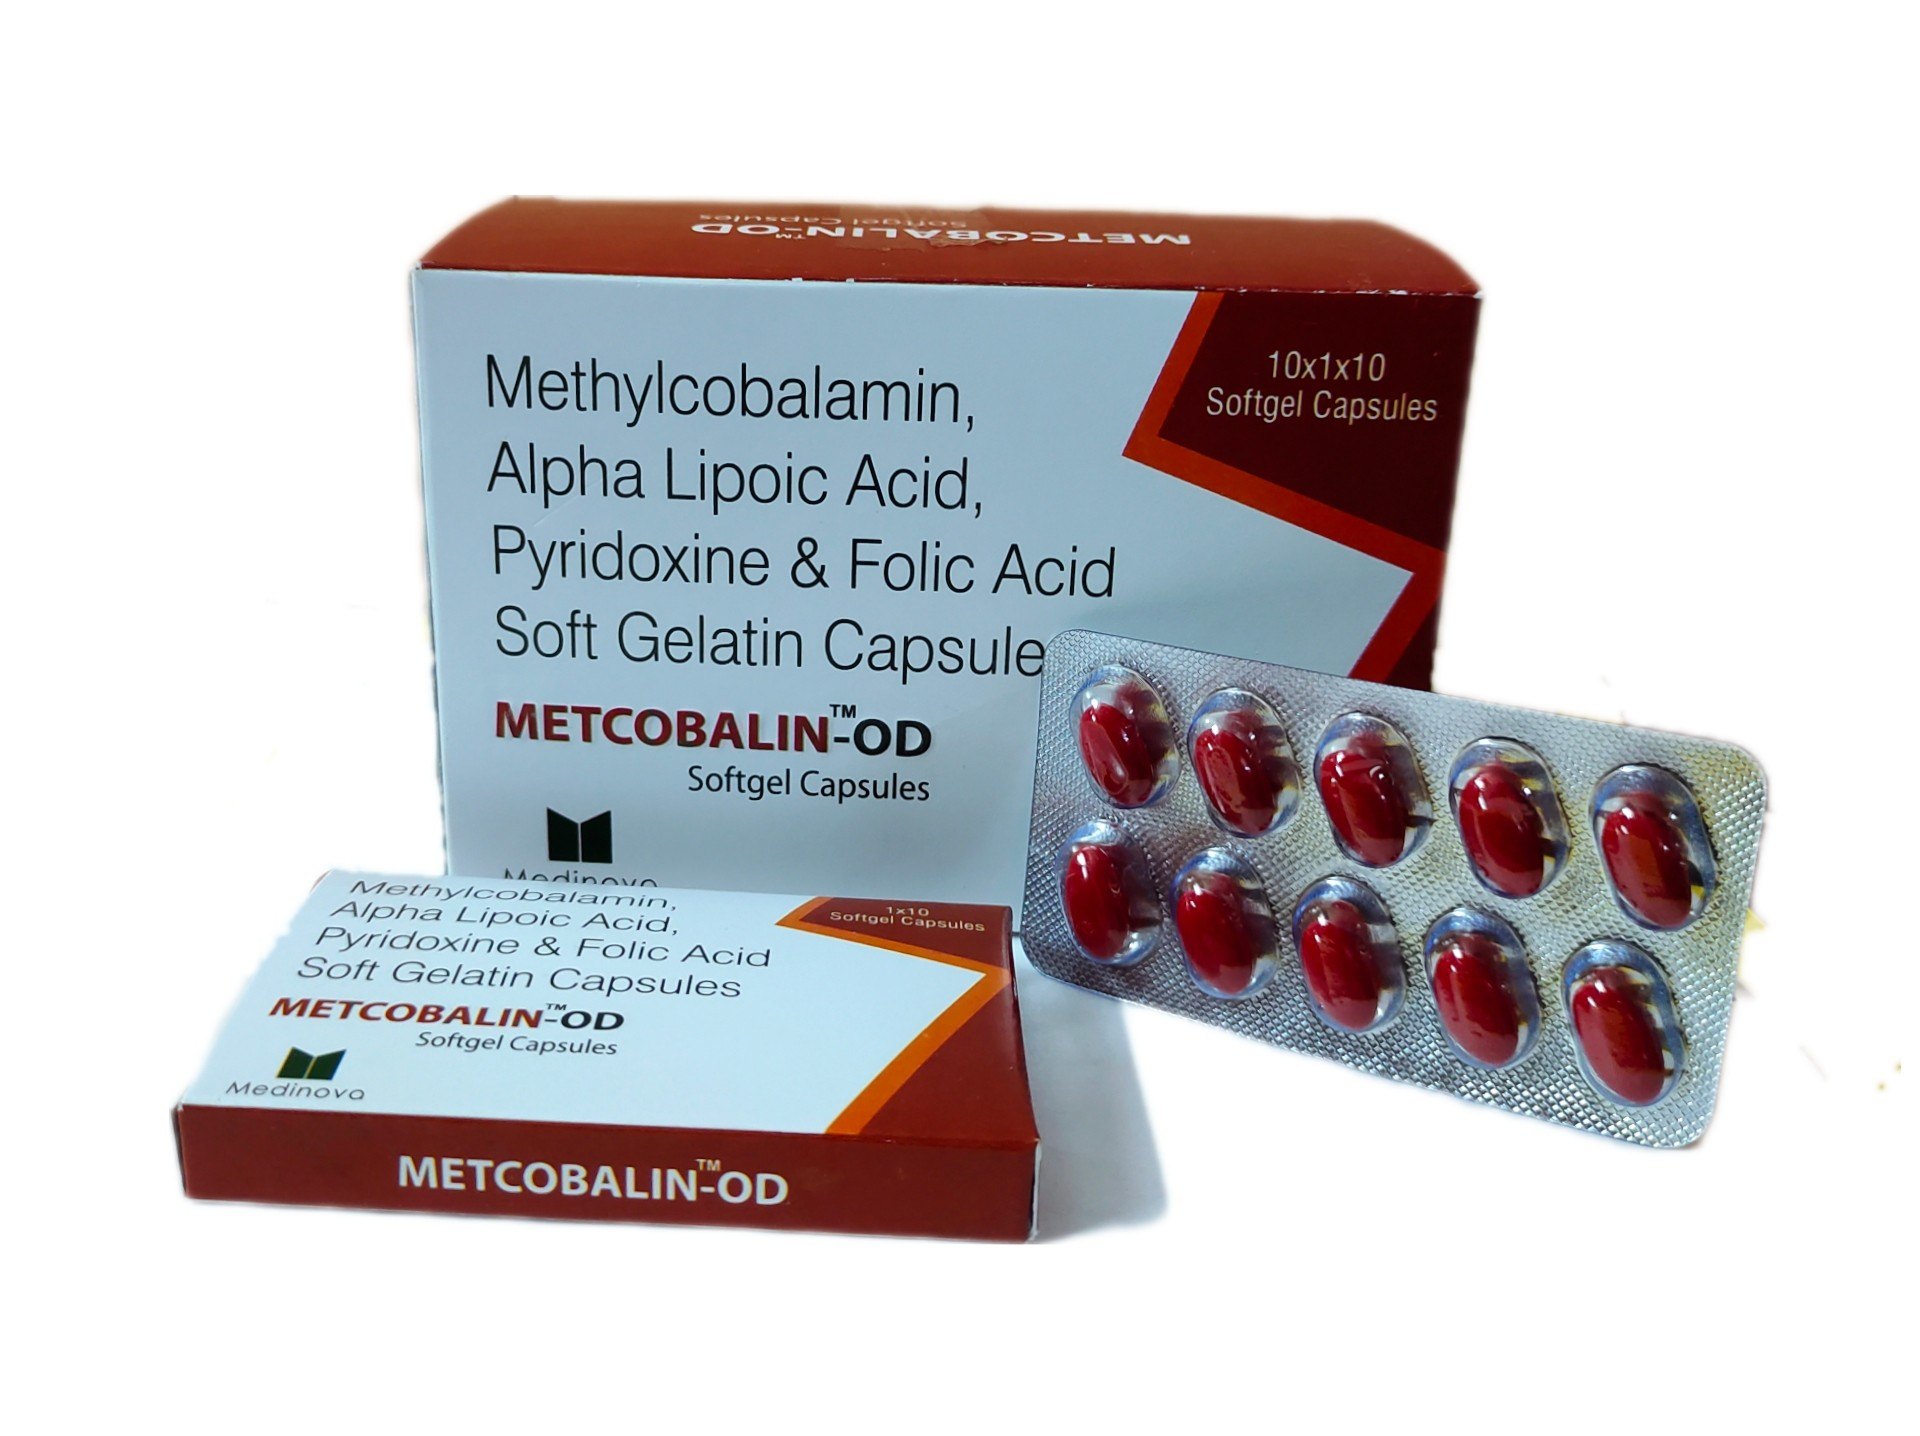 softgel capsules of methylcobalamin